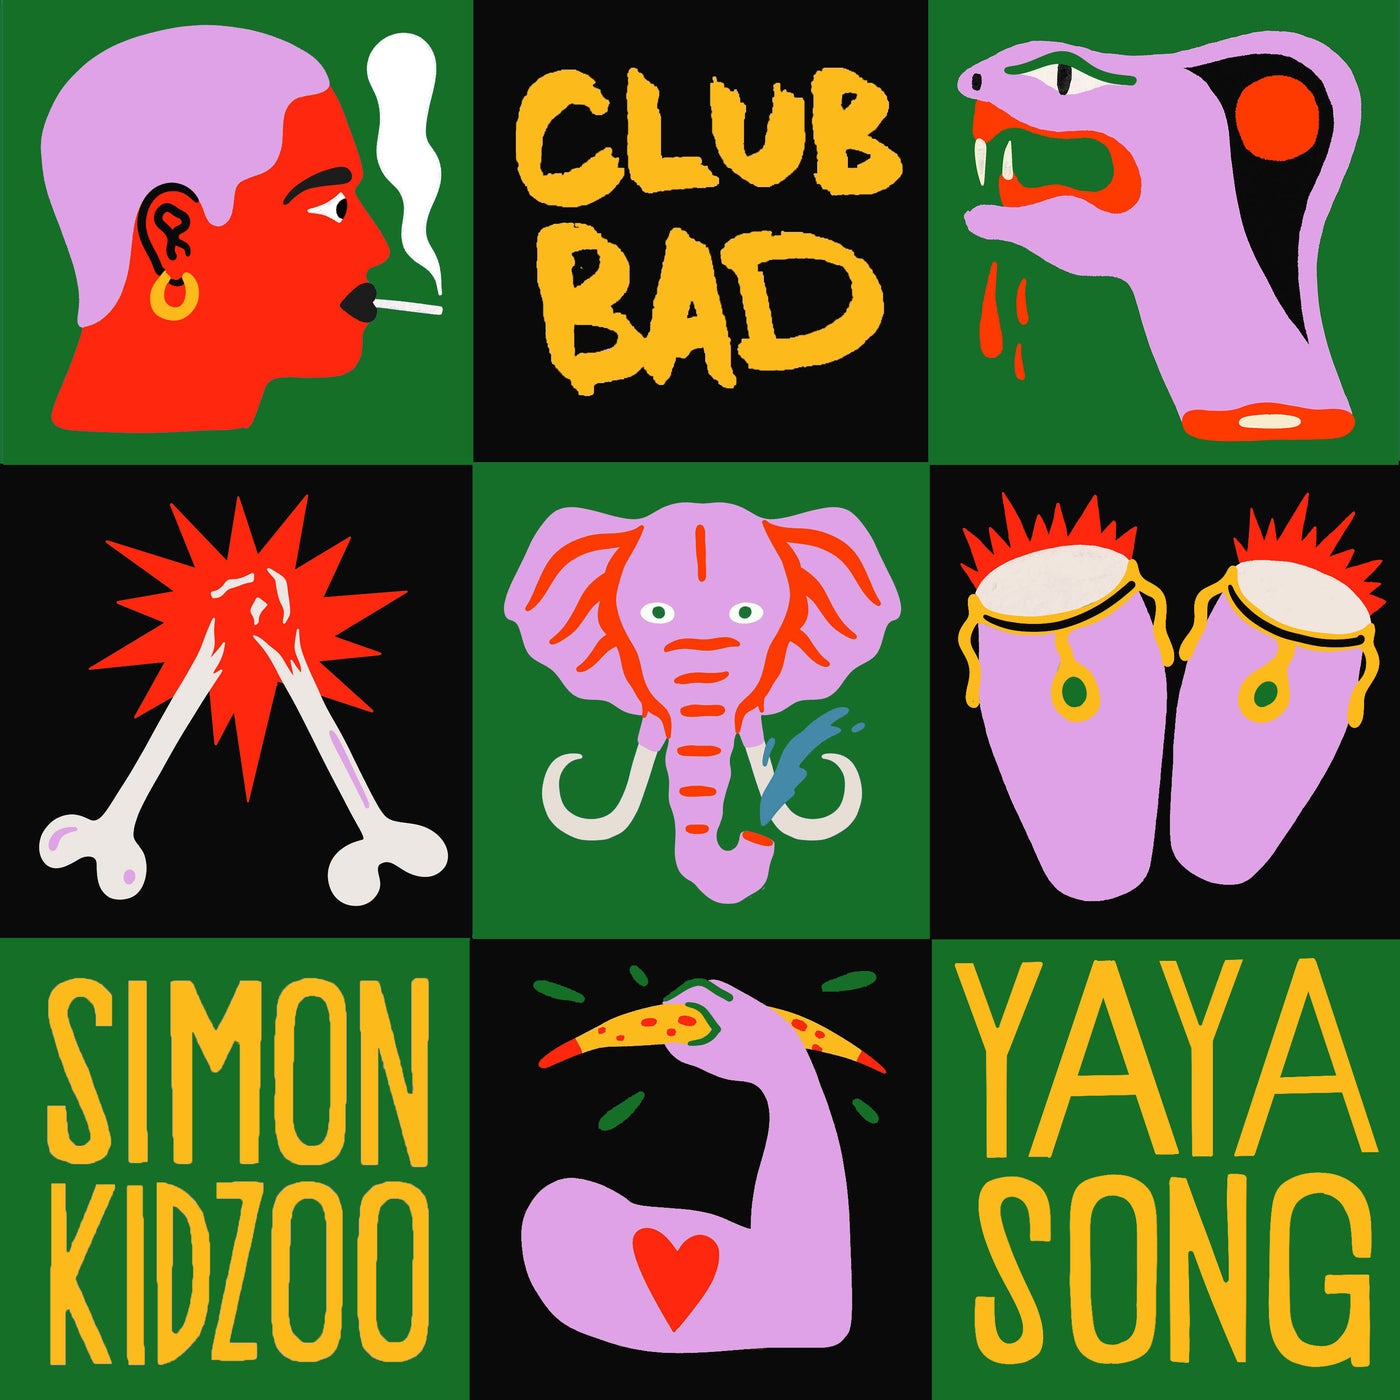 image cover: Simon Kidzoo - Yaya Song on Club Bad